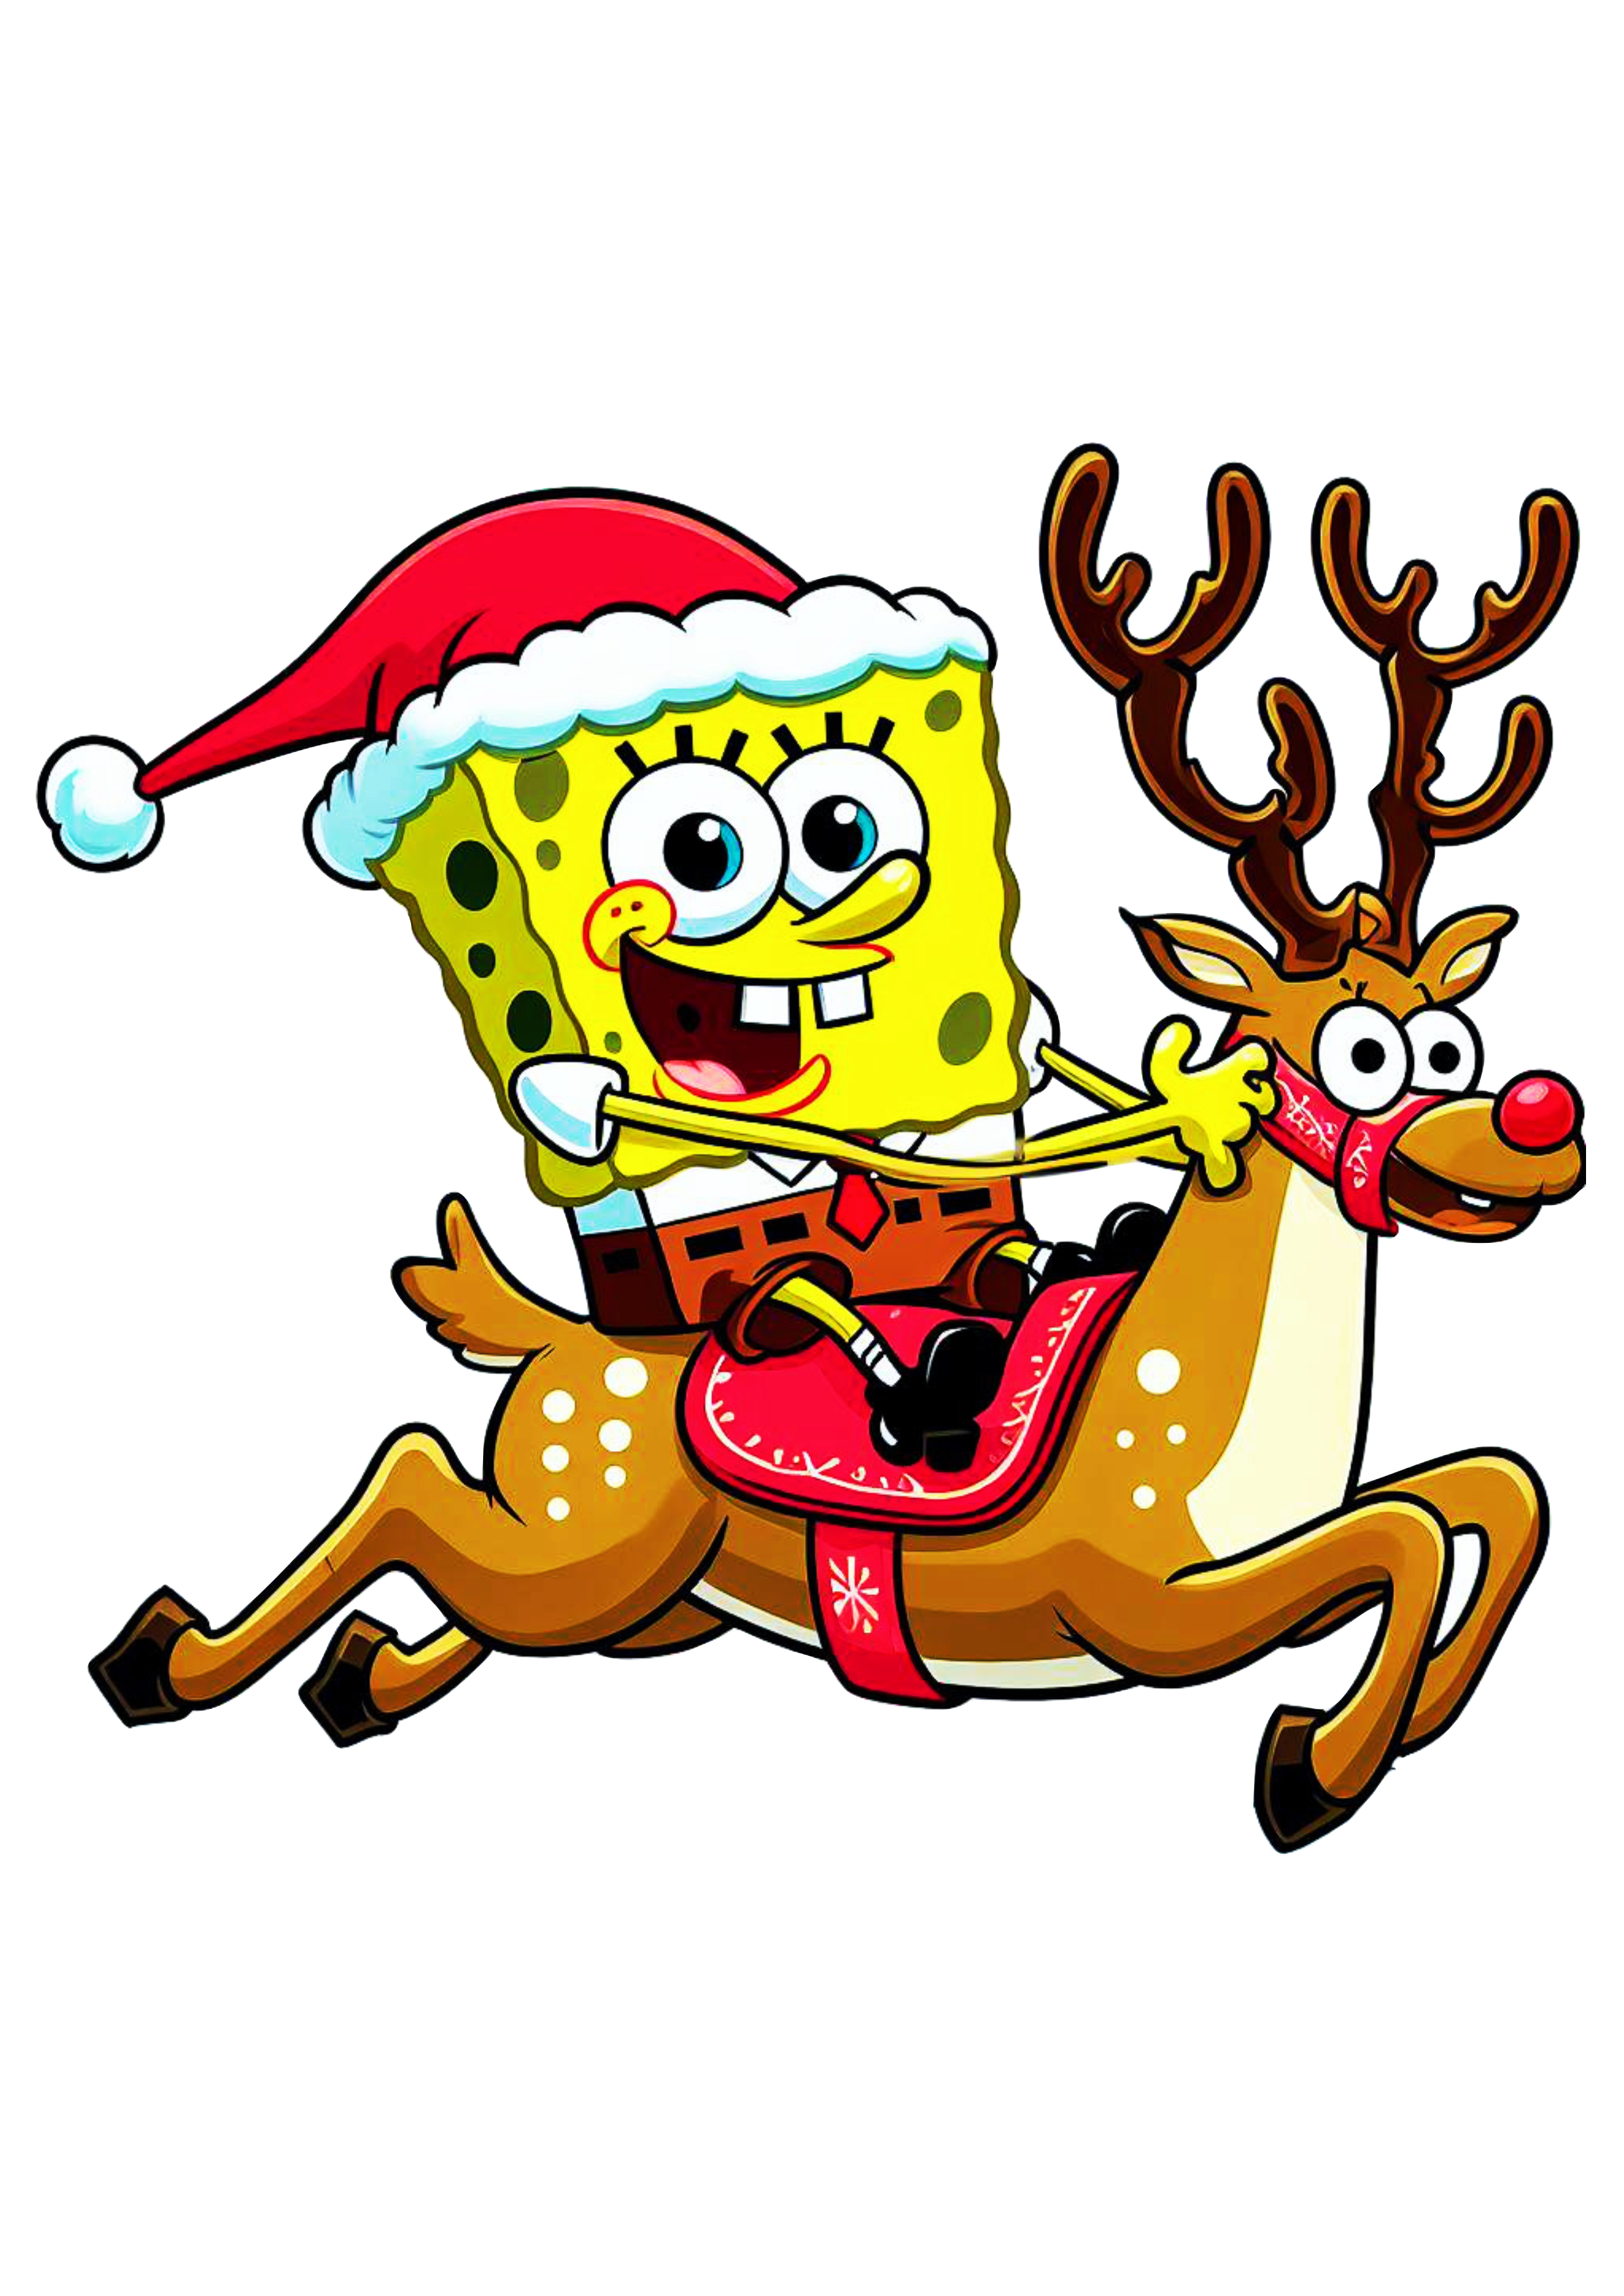 Bob esponja calça quadrada feliz natal com gorro do papai noel montado em uma rena spongebob squarepants nickelodeon desenho infantil png